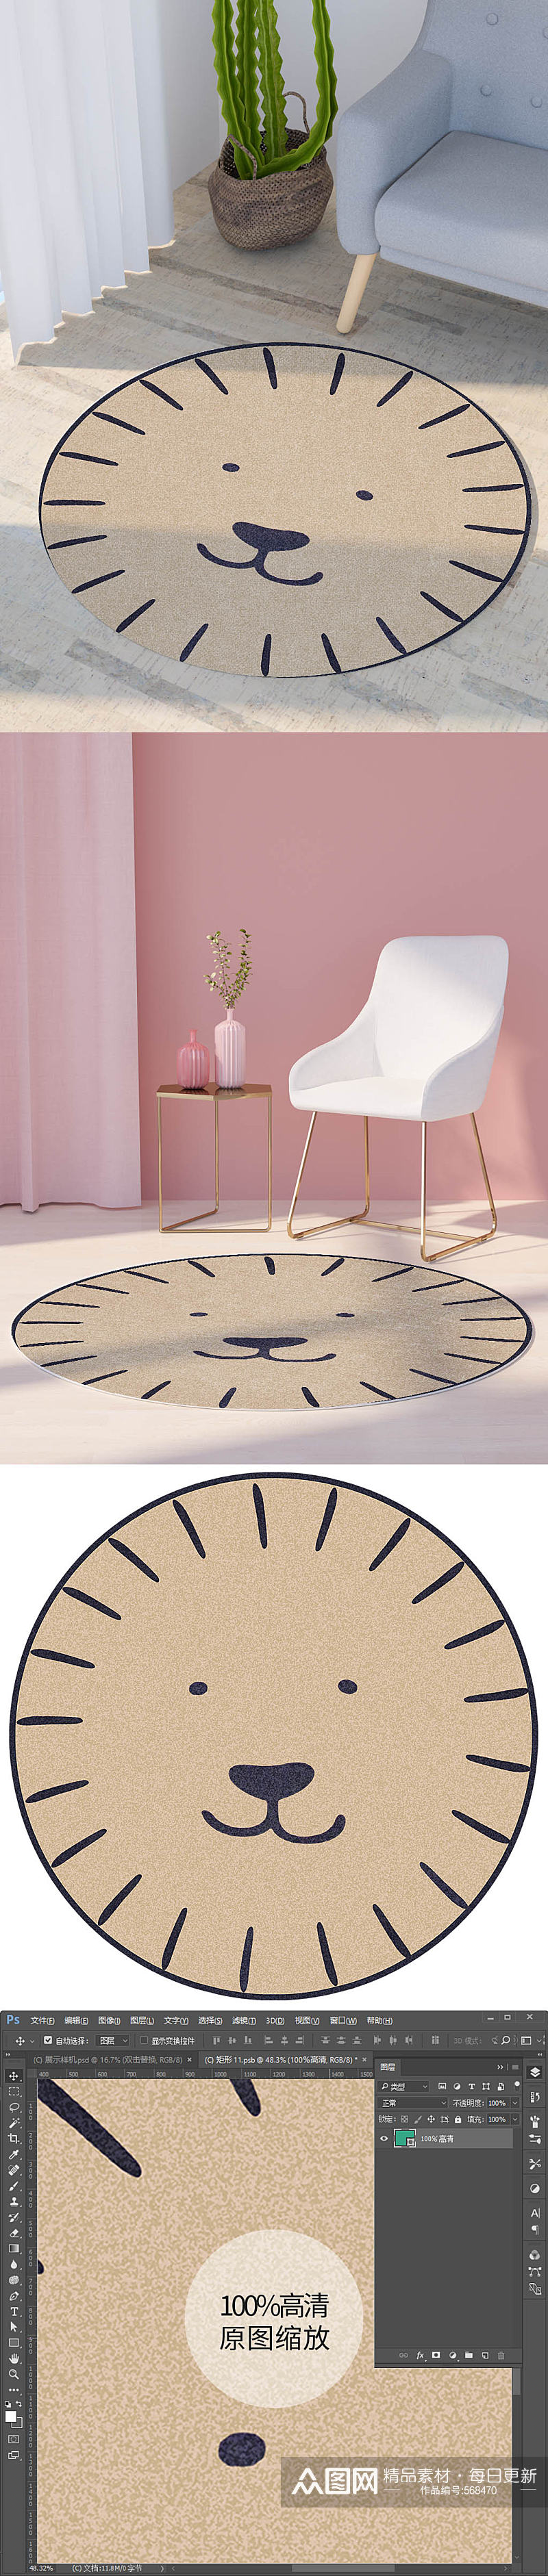 卡通图案圆形地毯垫子小动物花边圆图素材